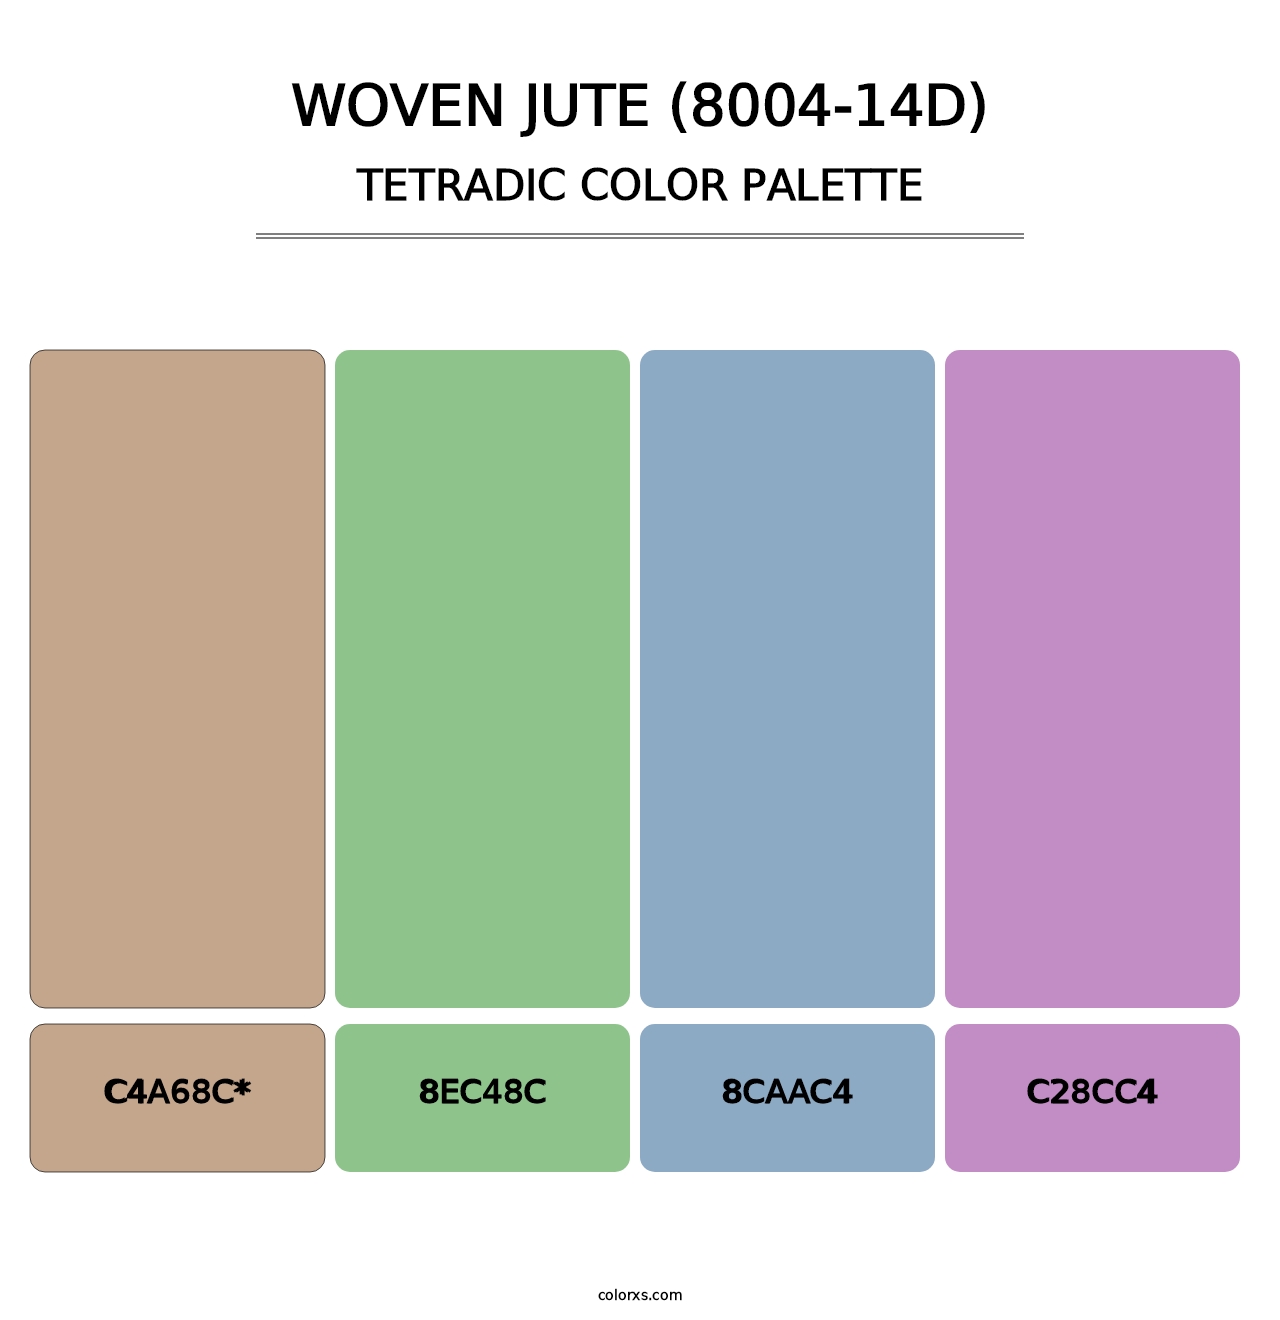 Woven Jute (8004-14D) - Tetradic Color Palette